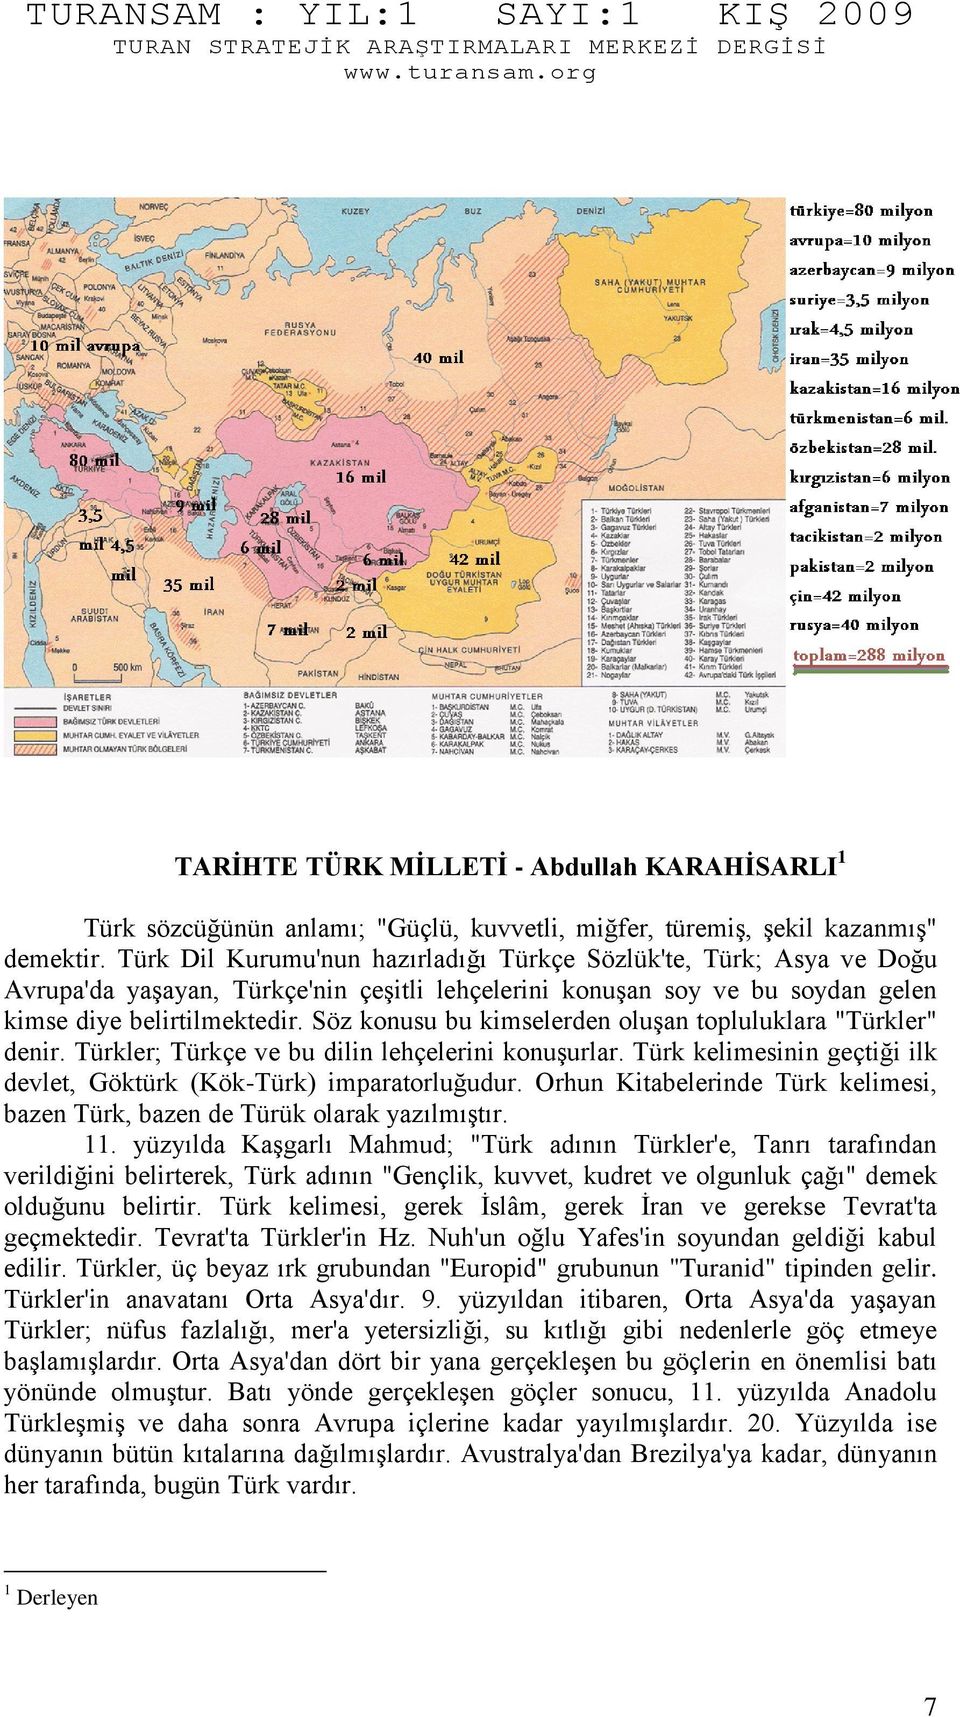 Söz konusu bu kimselerden oluşan topluluklara "Türkler" denir. Türkler; Türkçe ve bu dilin lehçelerini konuşurlar. Türk kelimesinin geçtiği ilk devlet, Göktürk (Kök-Türk) imparatorluğudur.